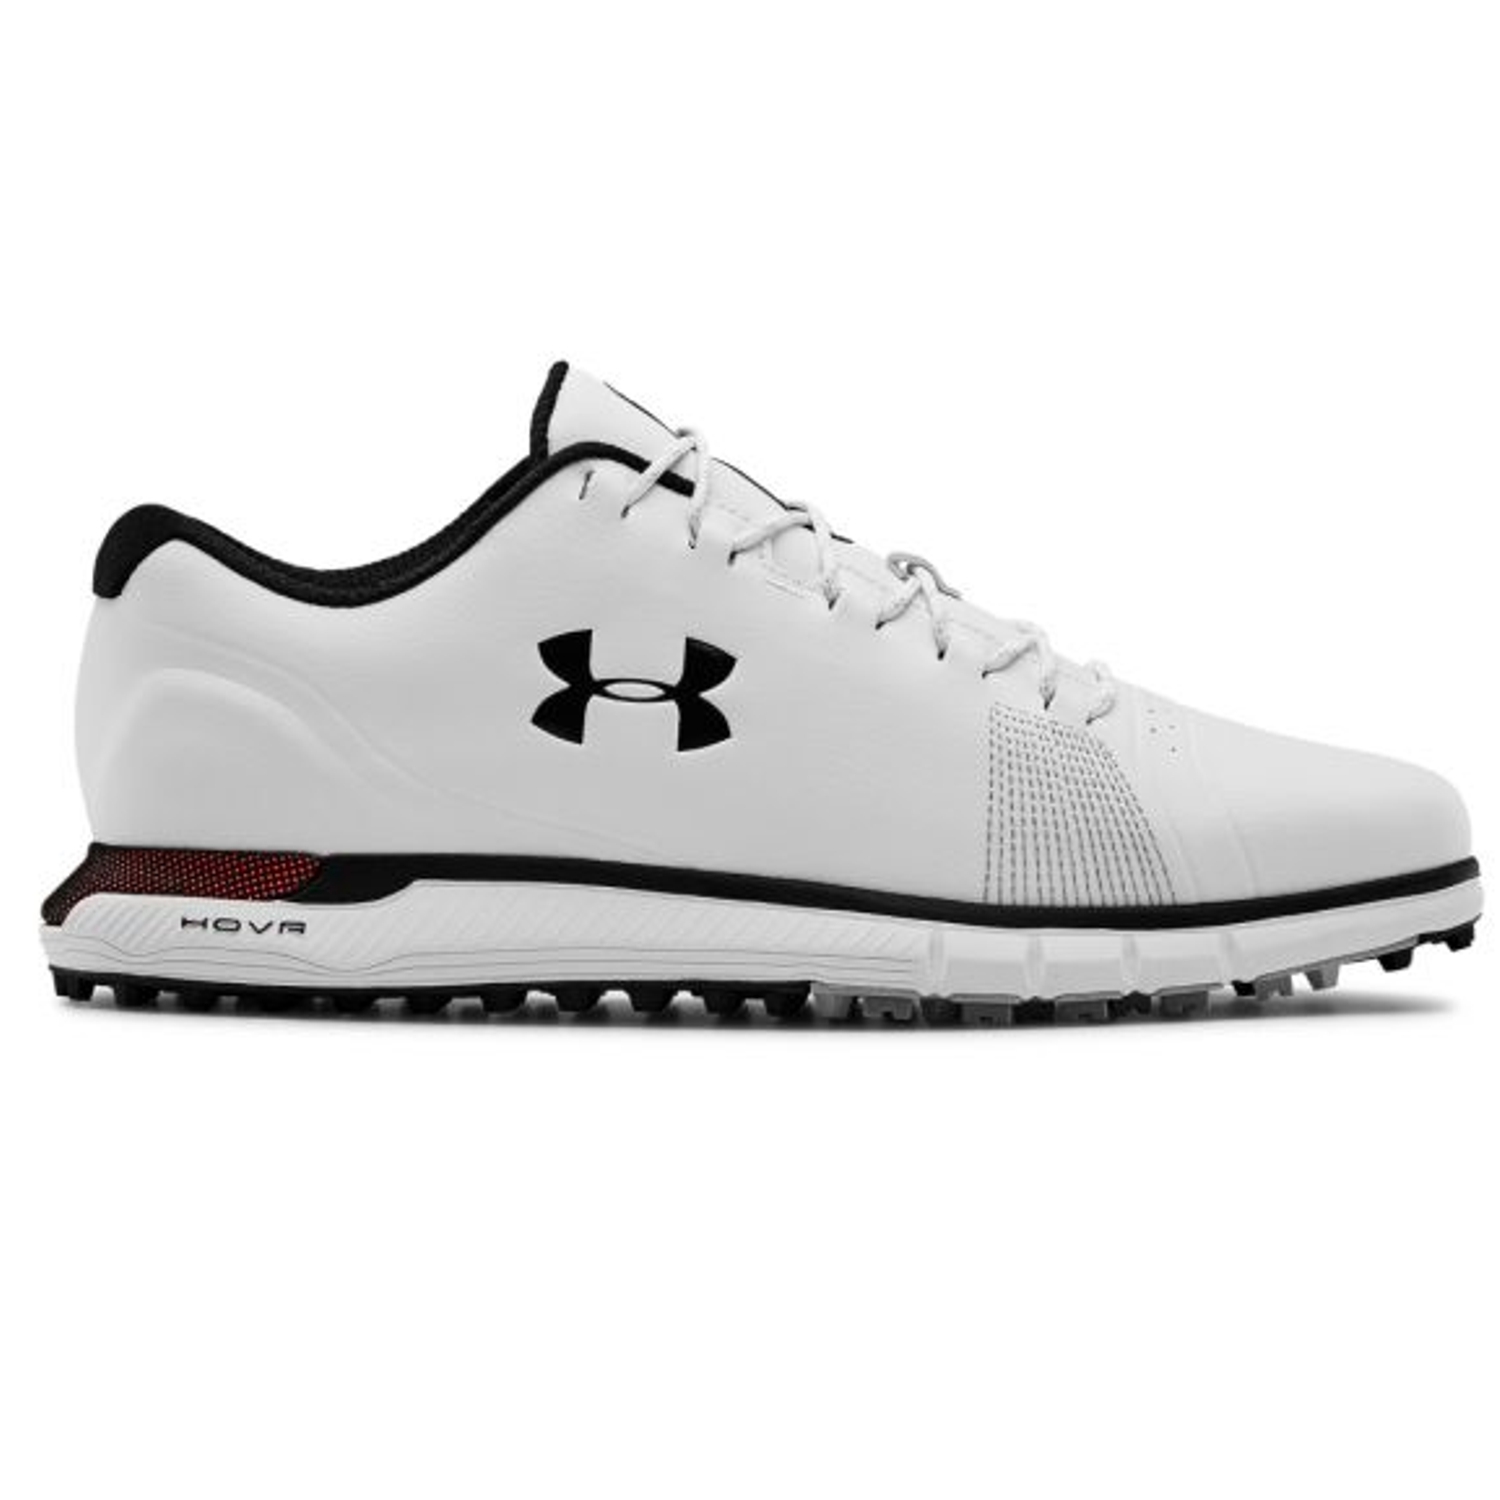 ua golf shoes